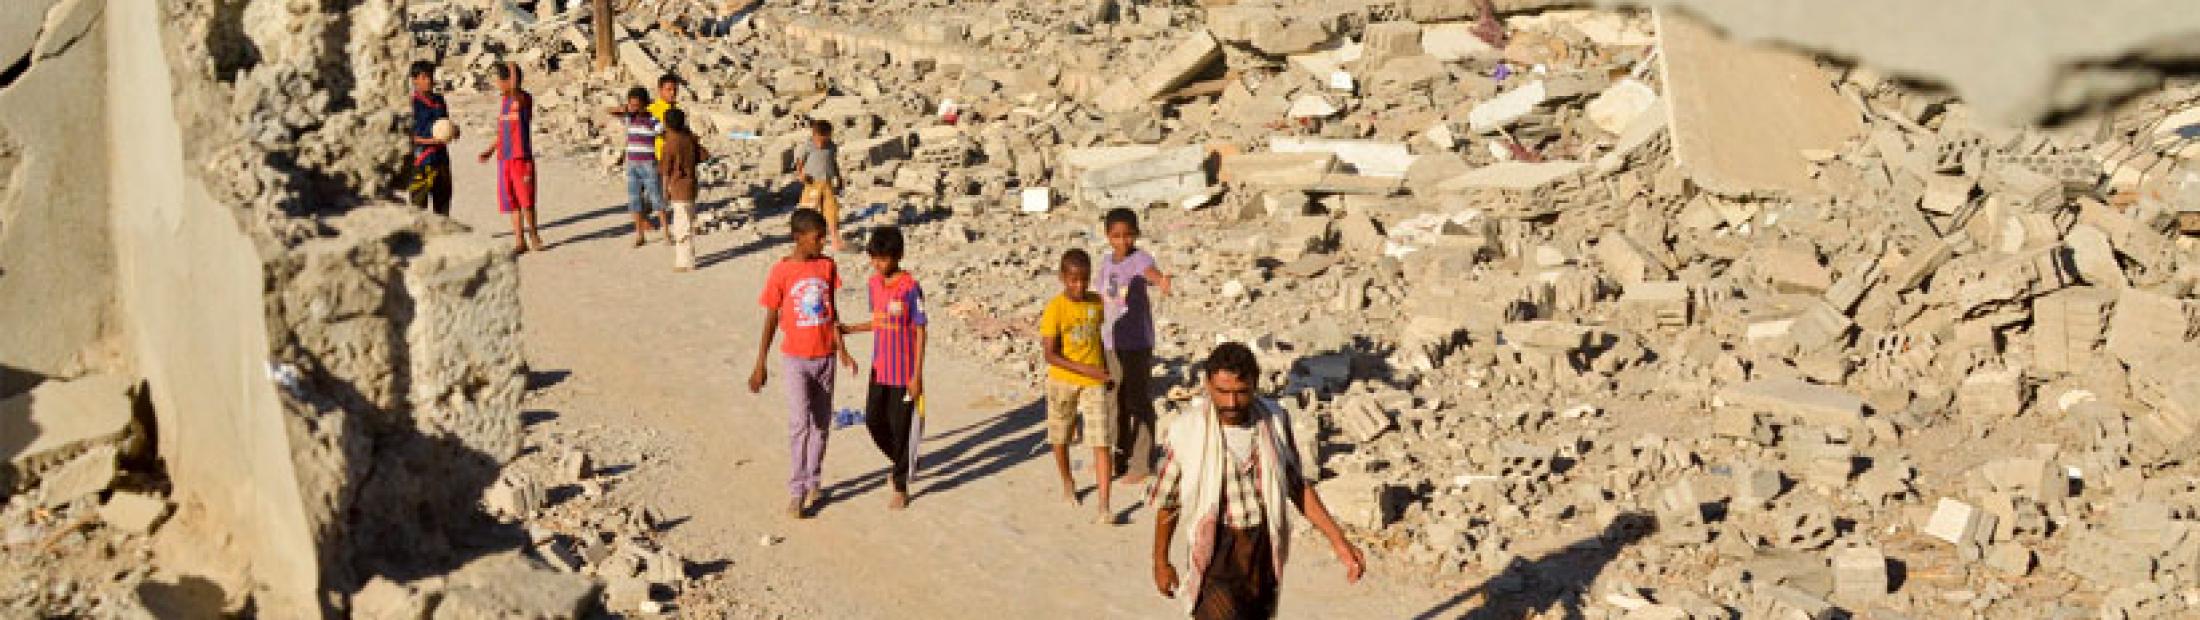 Guerra en Yemen: un conflicto de cuatro años que no cesa